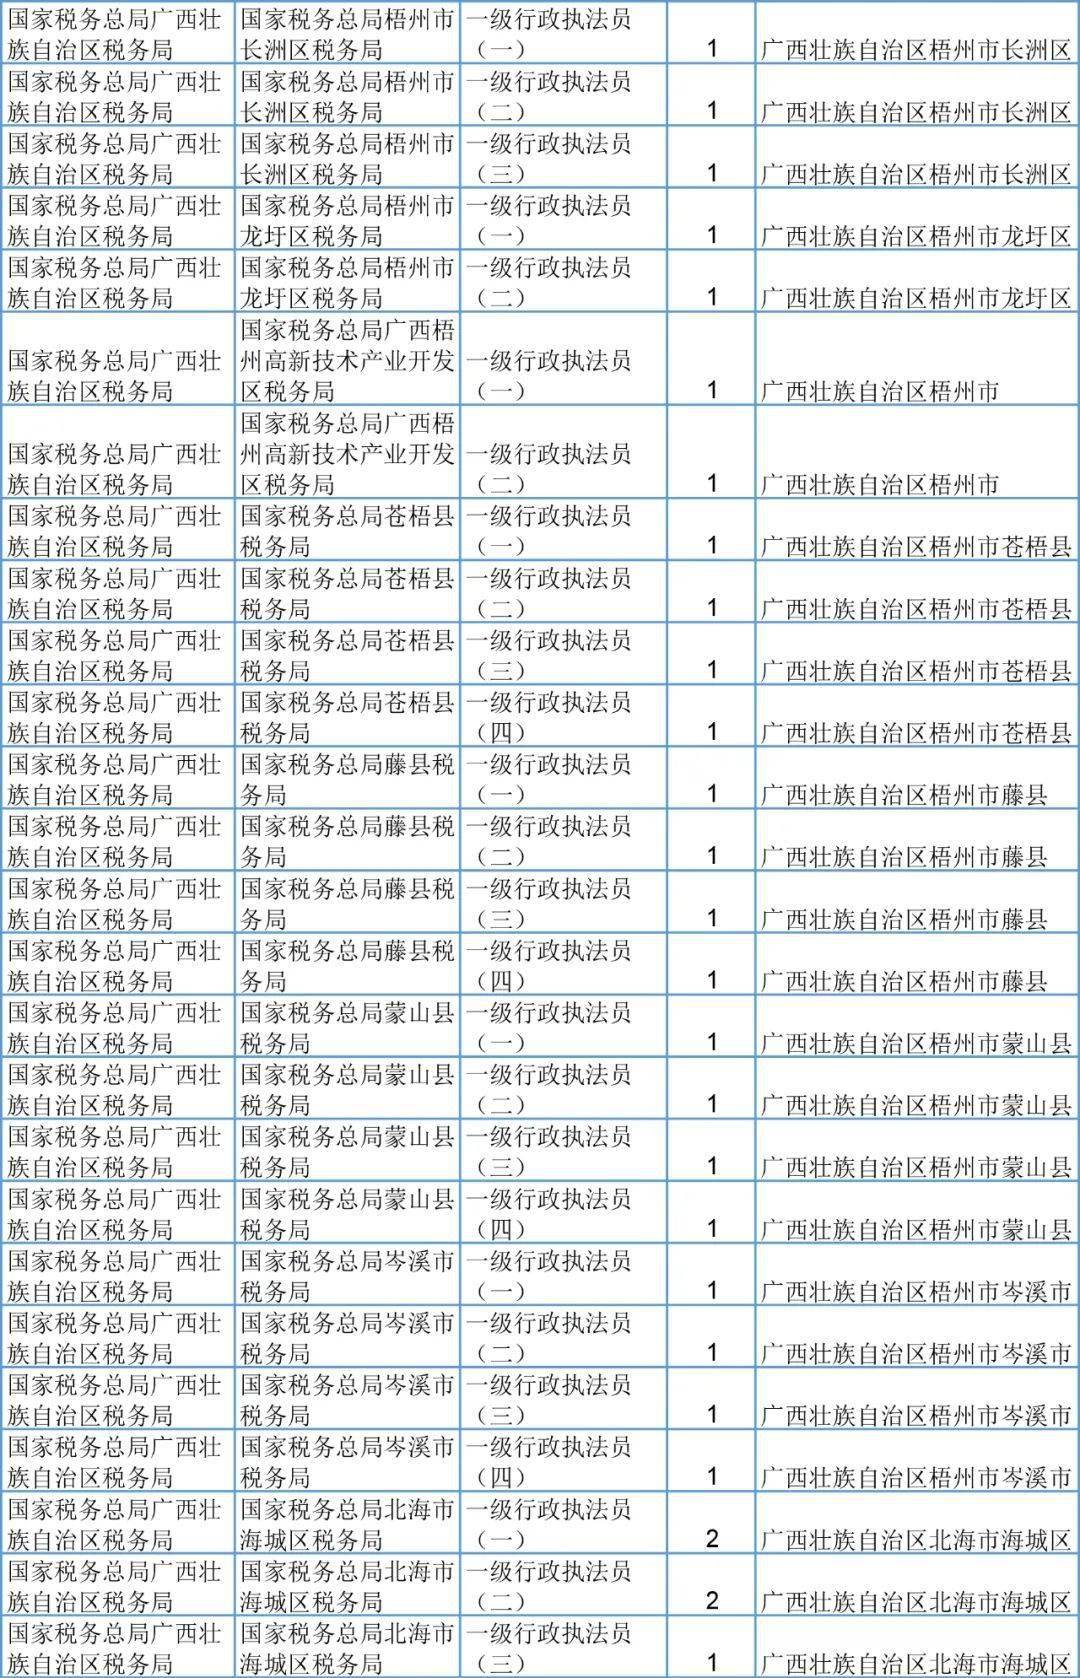 刚刚,桂林2021国家公务员报名开始 附招录表,转给有需要的人